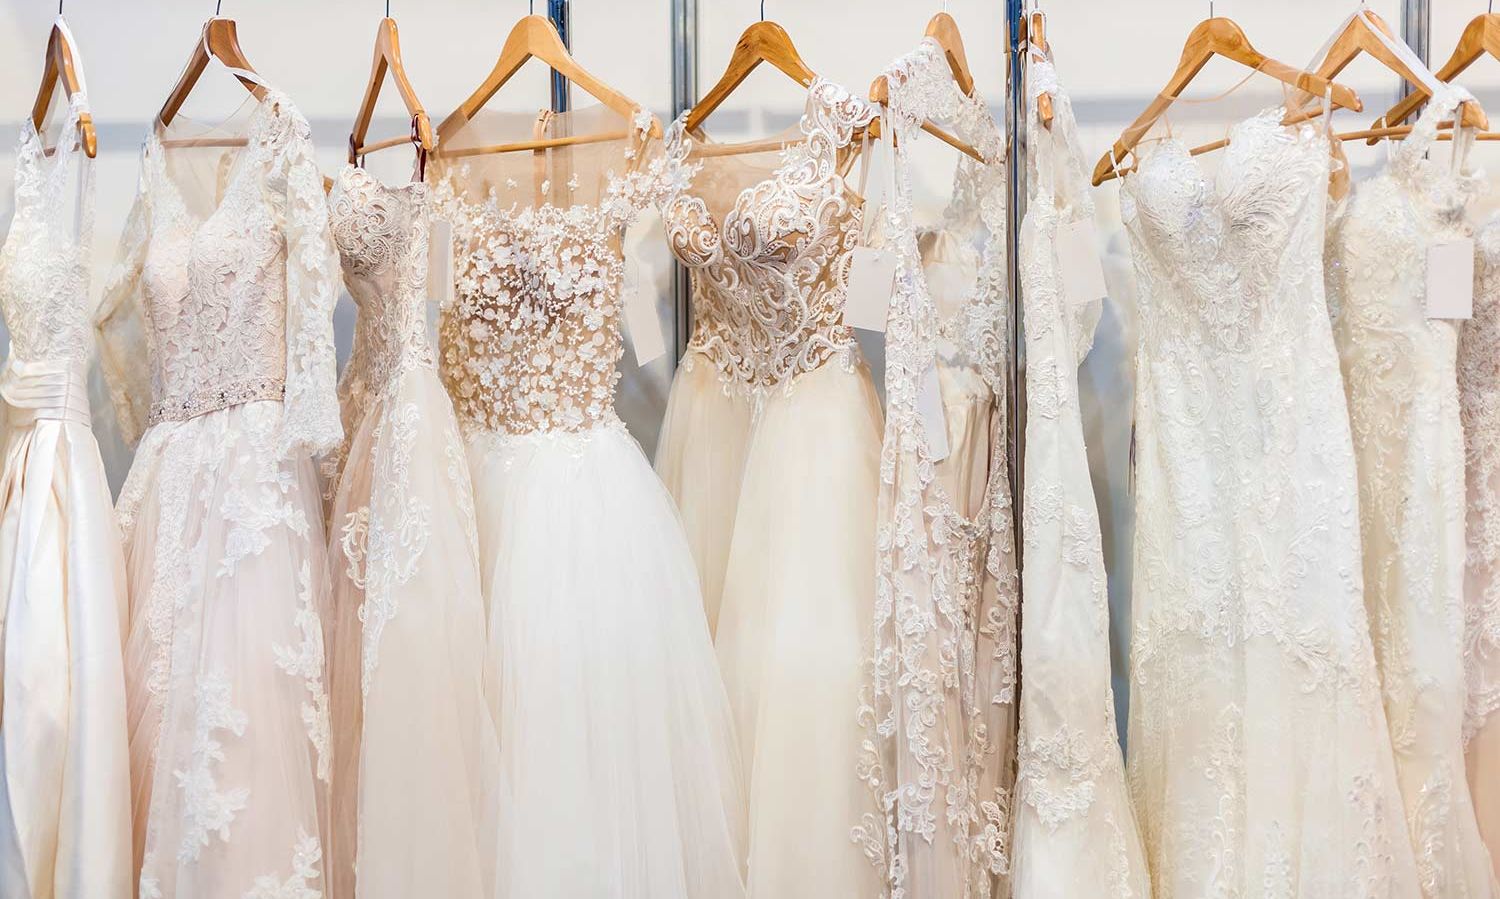 Brautkleid in Elfenbein - dezenter Farbton mit eleganter Ausstrahlung